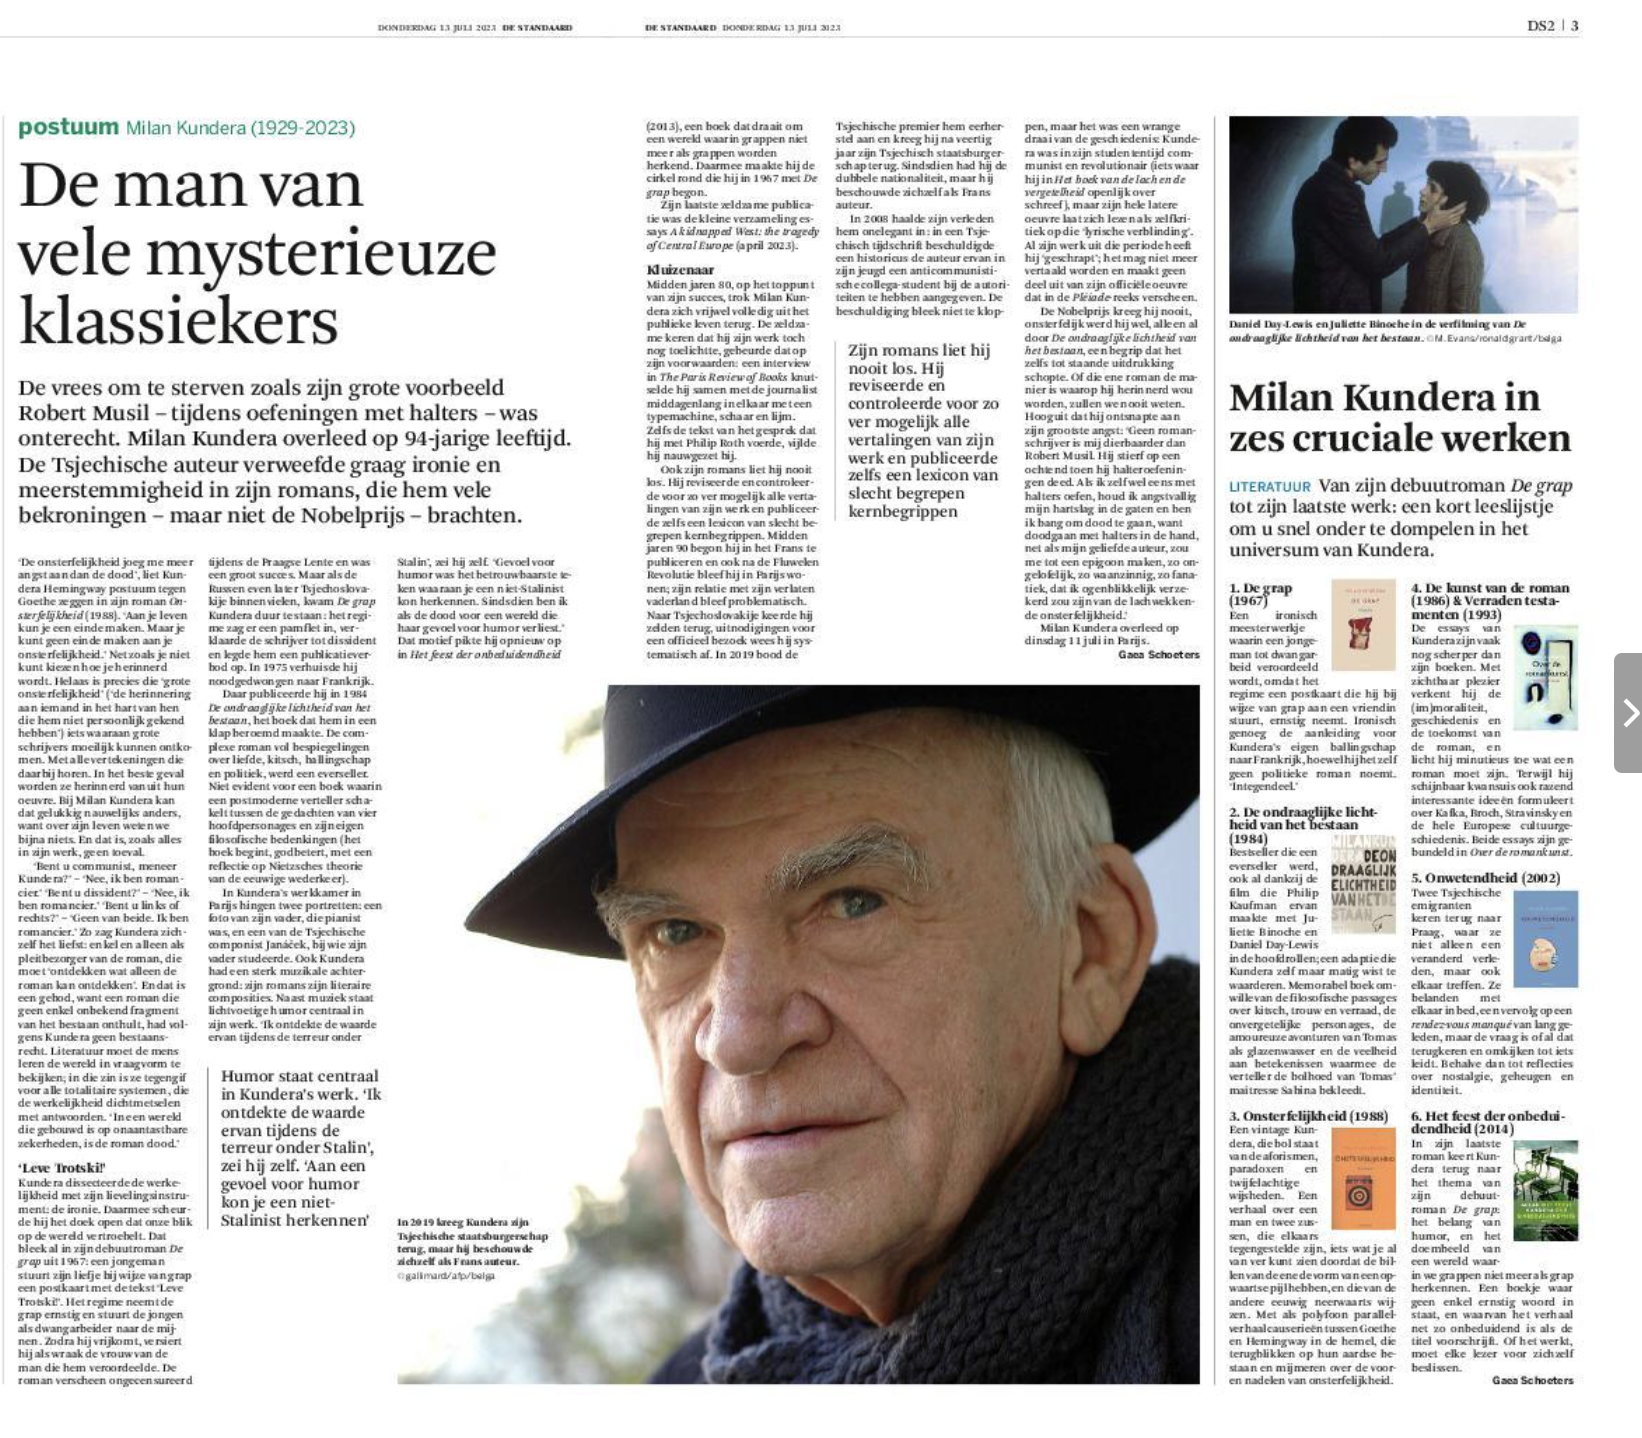 Kundera in zes cruciale werken @destandaard